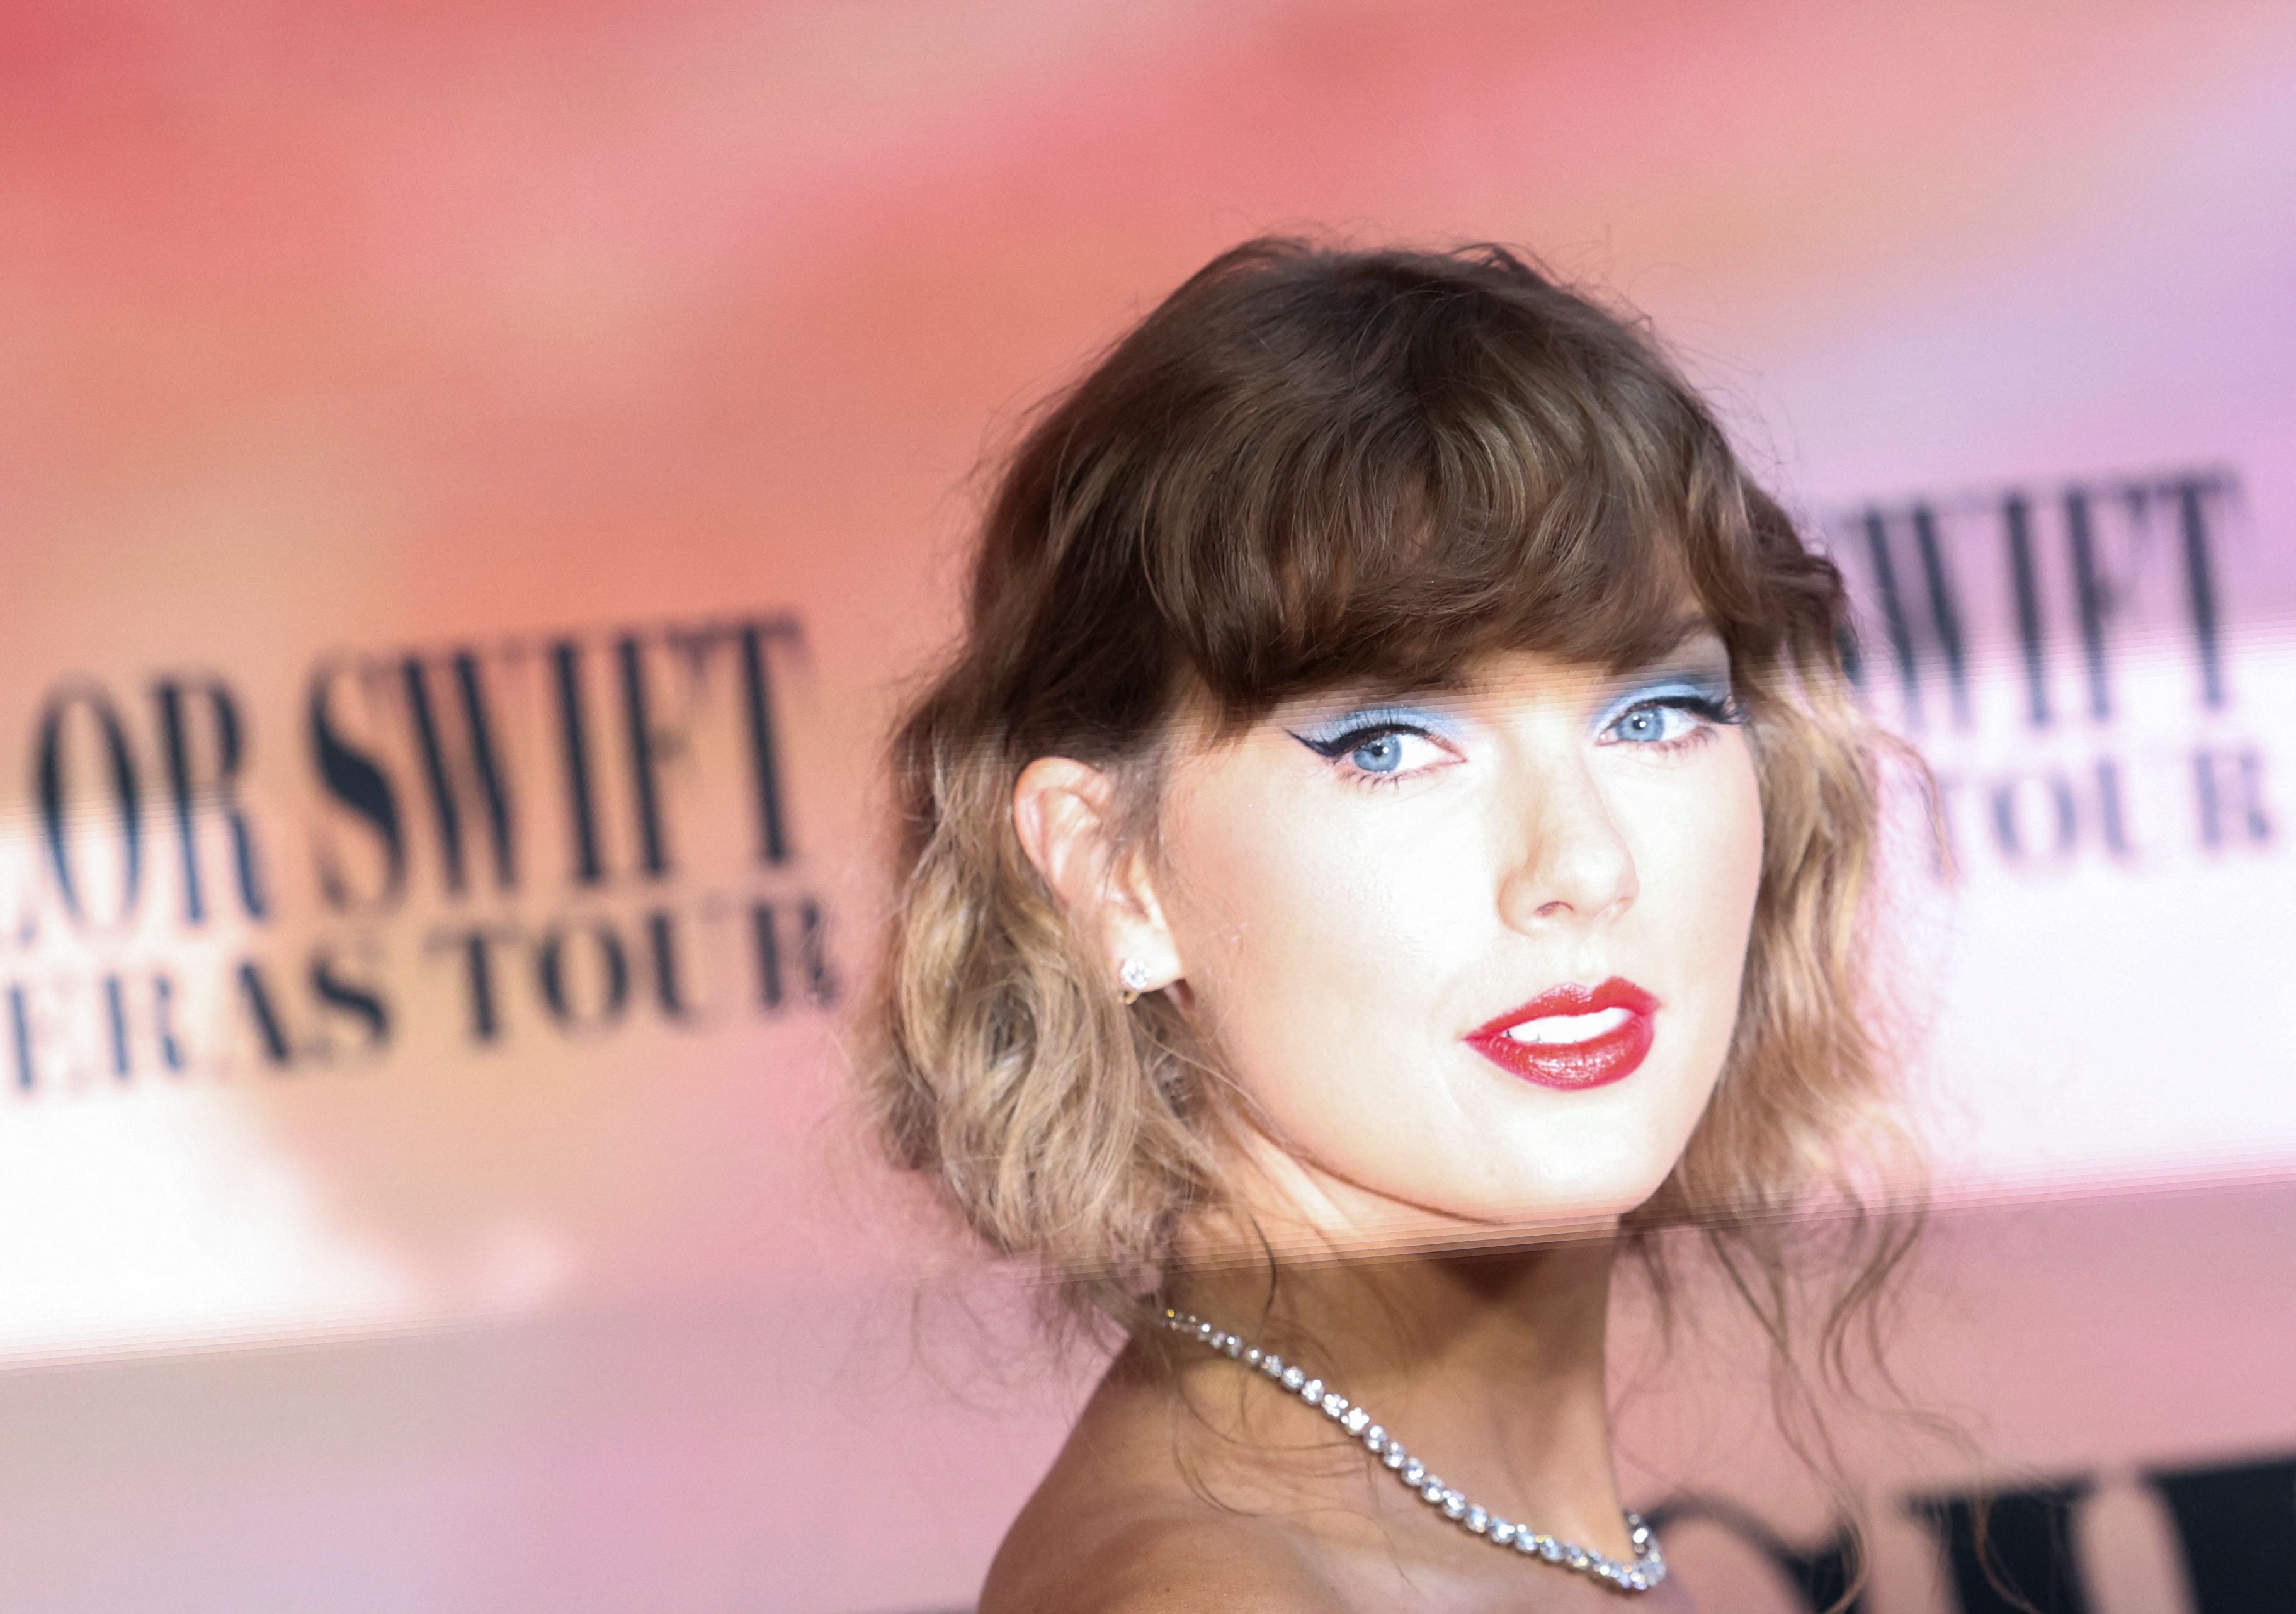 Taylor Swift nos enseña que ser amable con todos es importante para una vida plena (Reuters)
